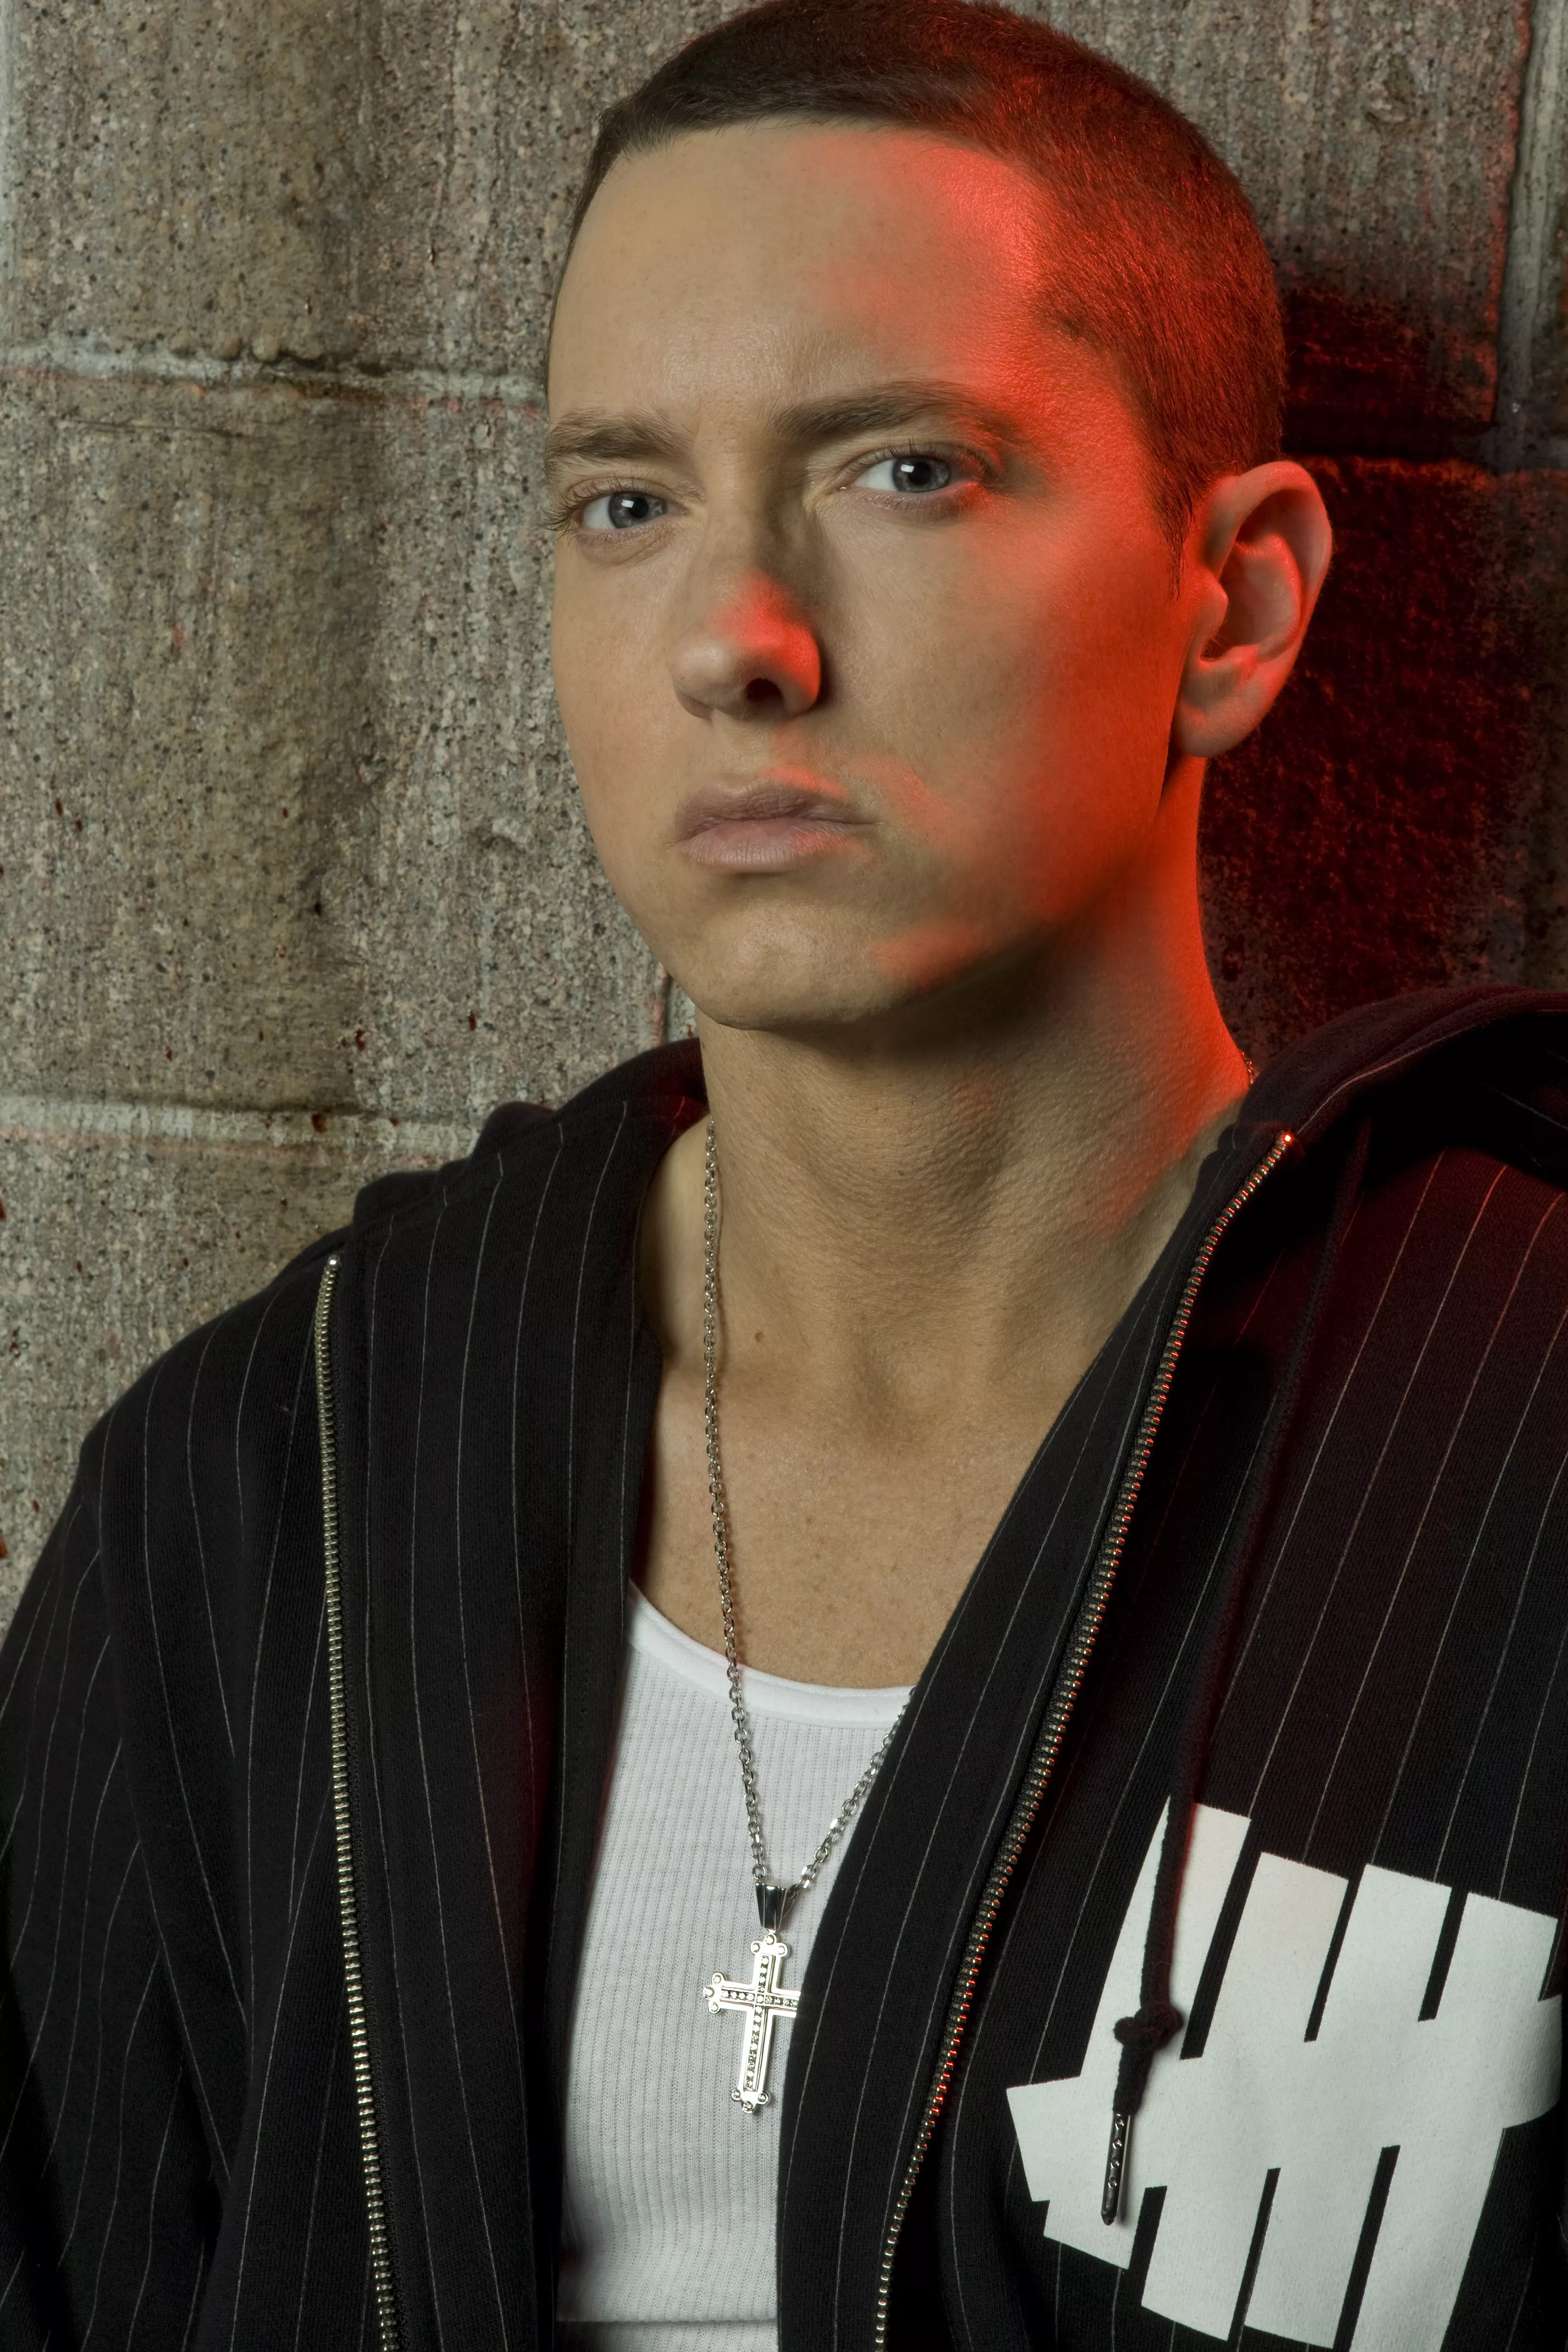 GAFFA var til release party med Eminem i Detroit